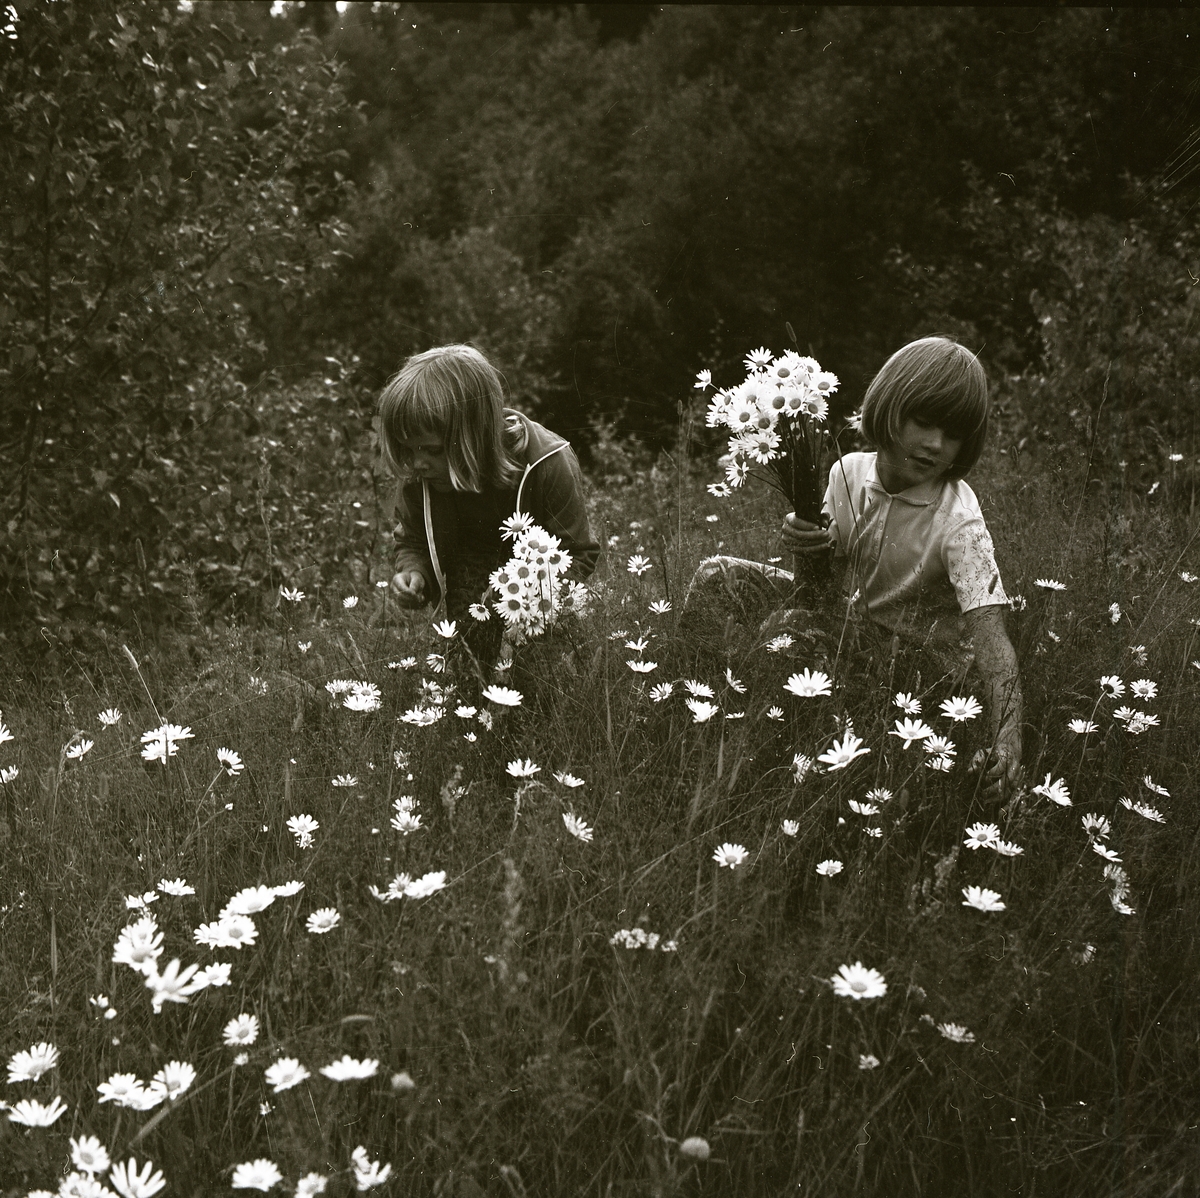 Två barn plockar buketter med prästkragar i det höga gräset på en sommaräng cirka 1973.